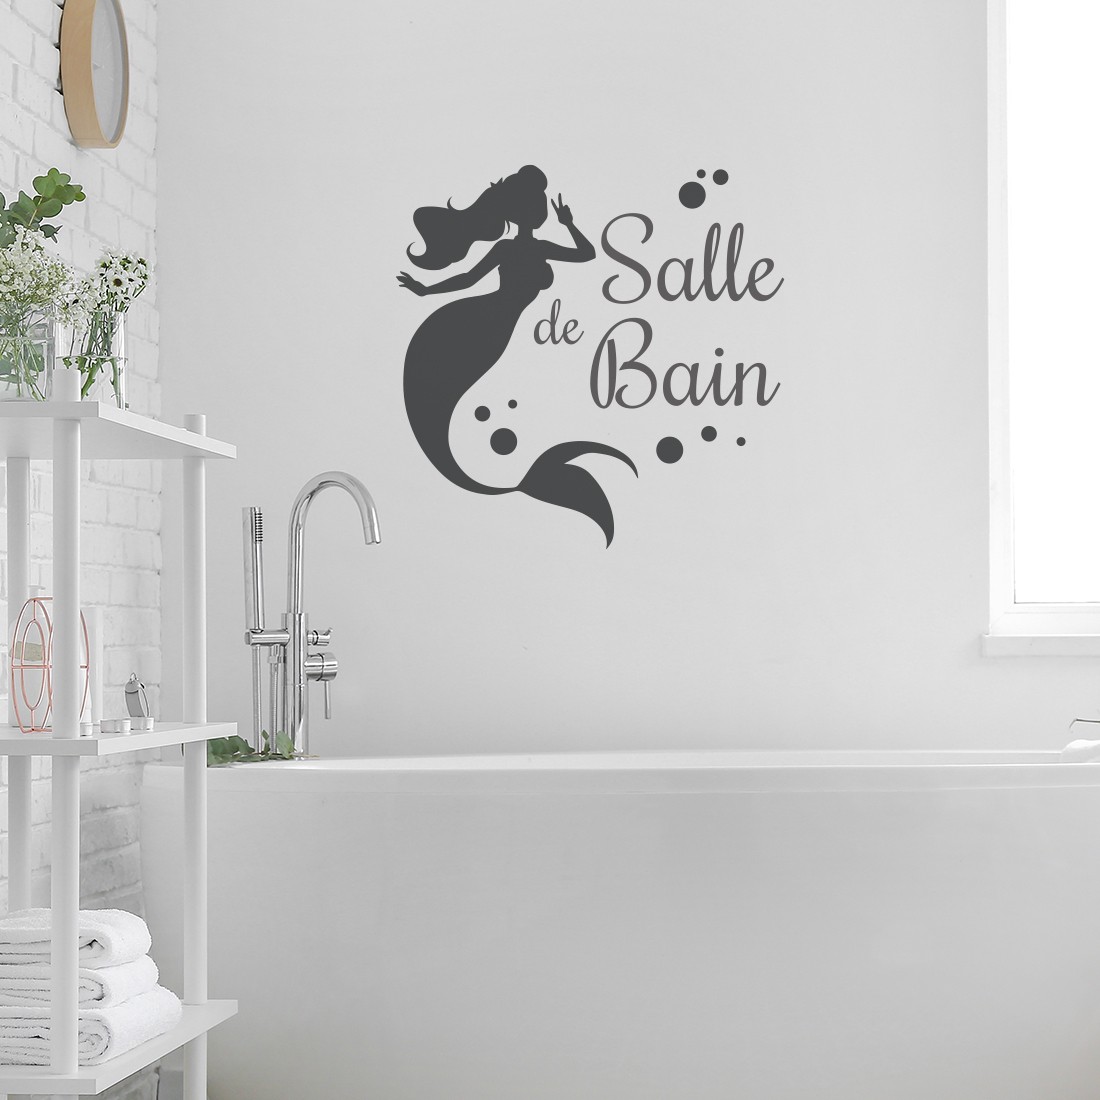 Stickers salle de bain : 5 Idées pour décorer avec des stickers et adhésifs